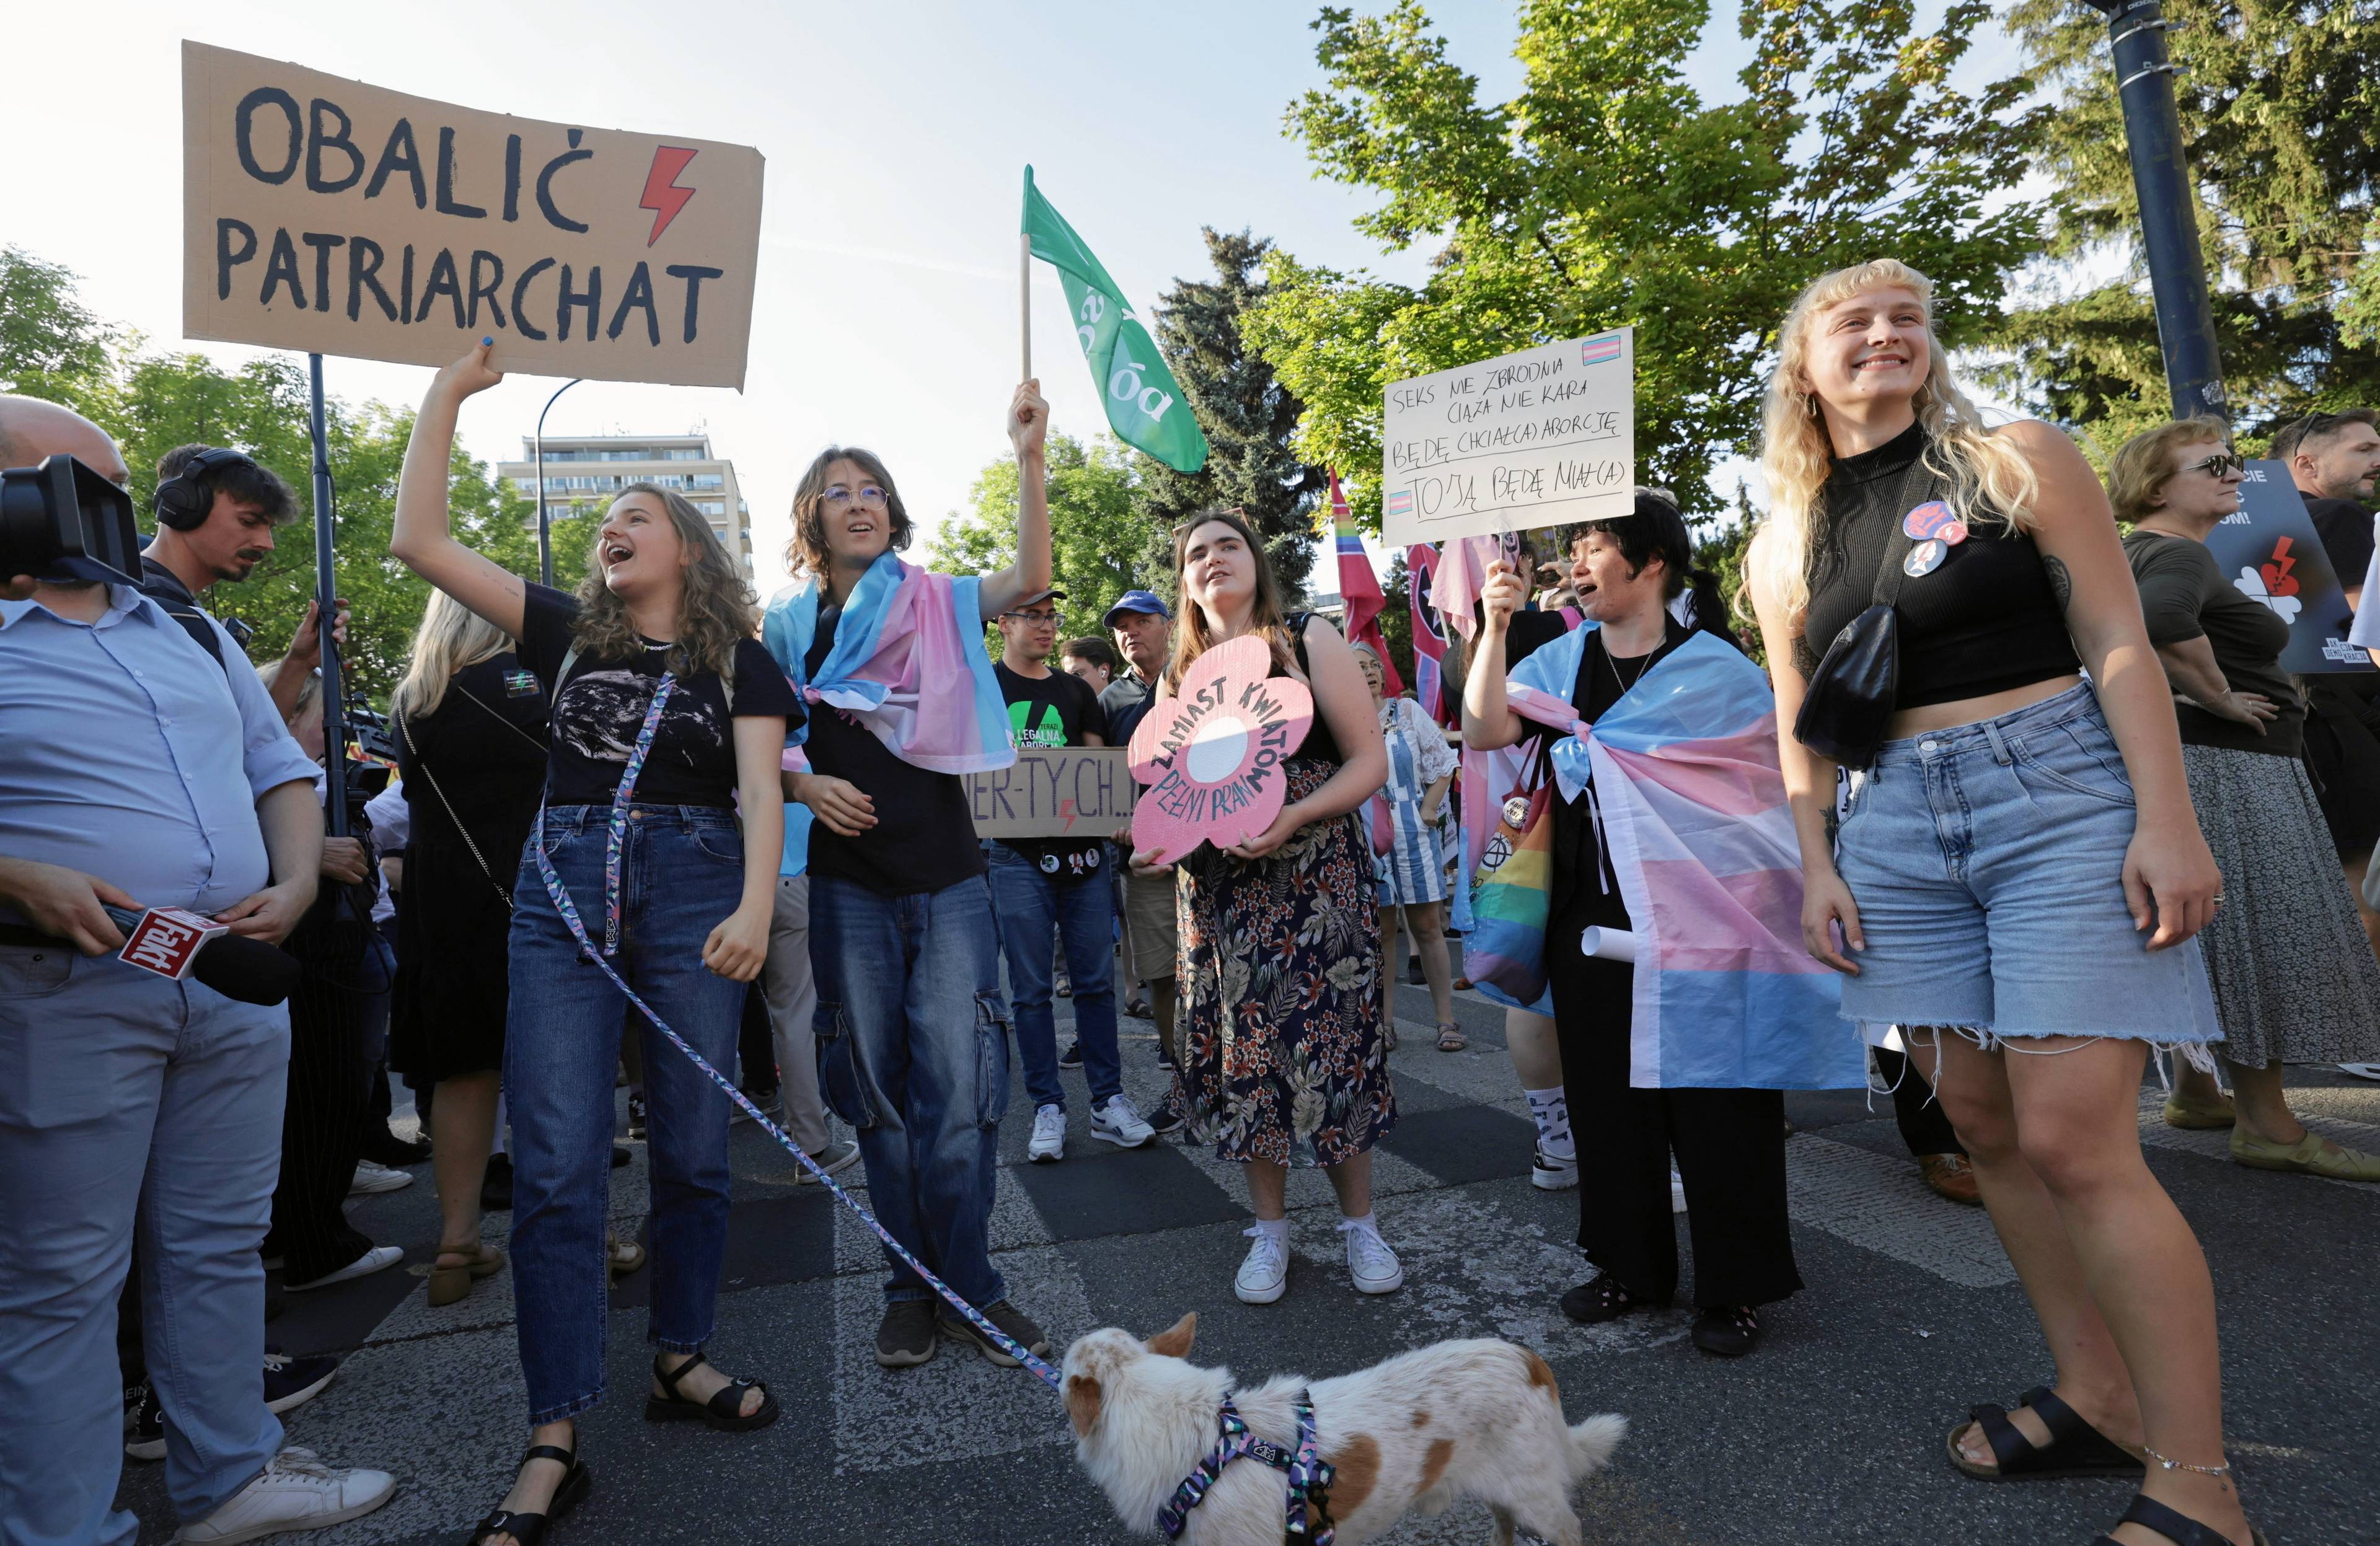 Młlde kobiety protestują z hasłem "Obalić patriarchat"